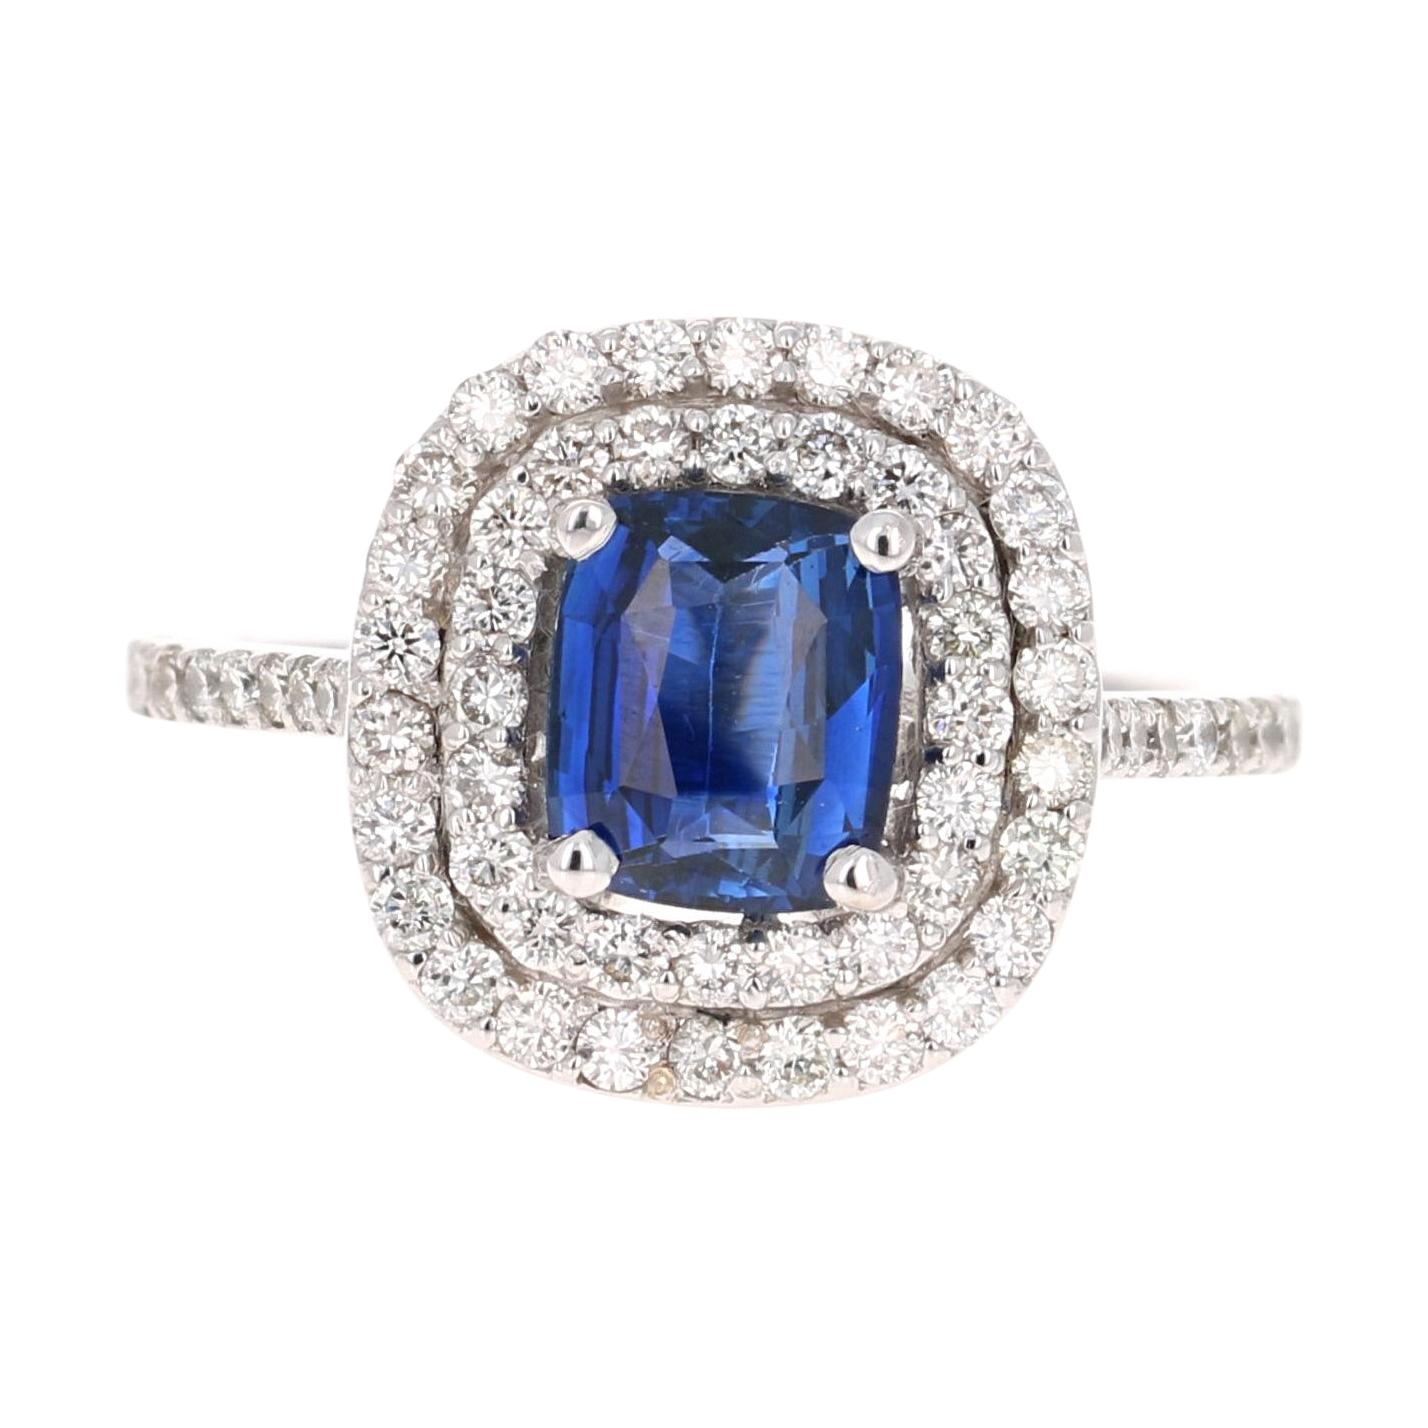 2.29 Carat Blue Sapphire Diamond Ring GIA Certified 14 Karat White Gold Ring